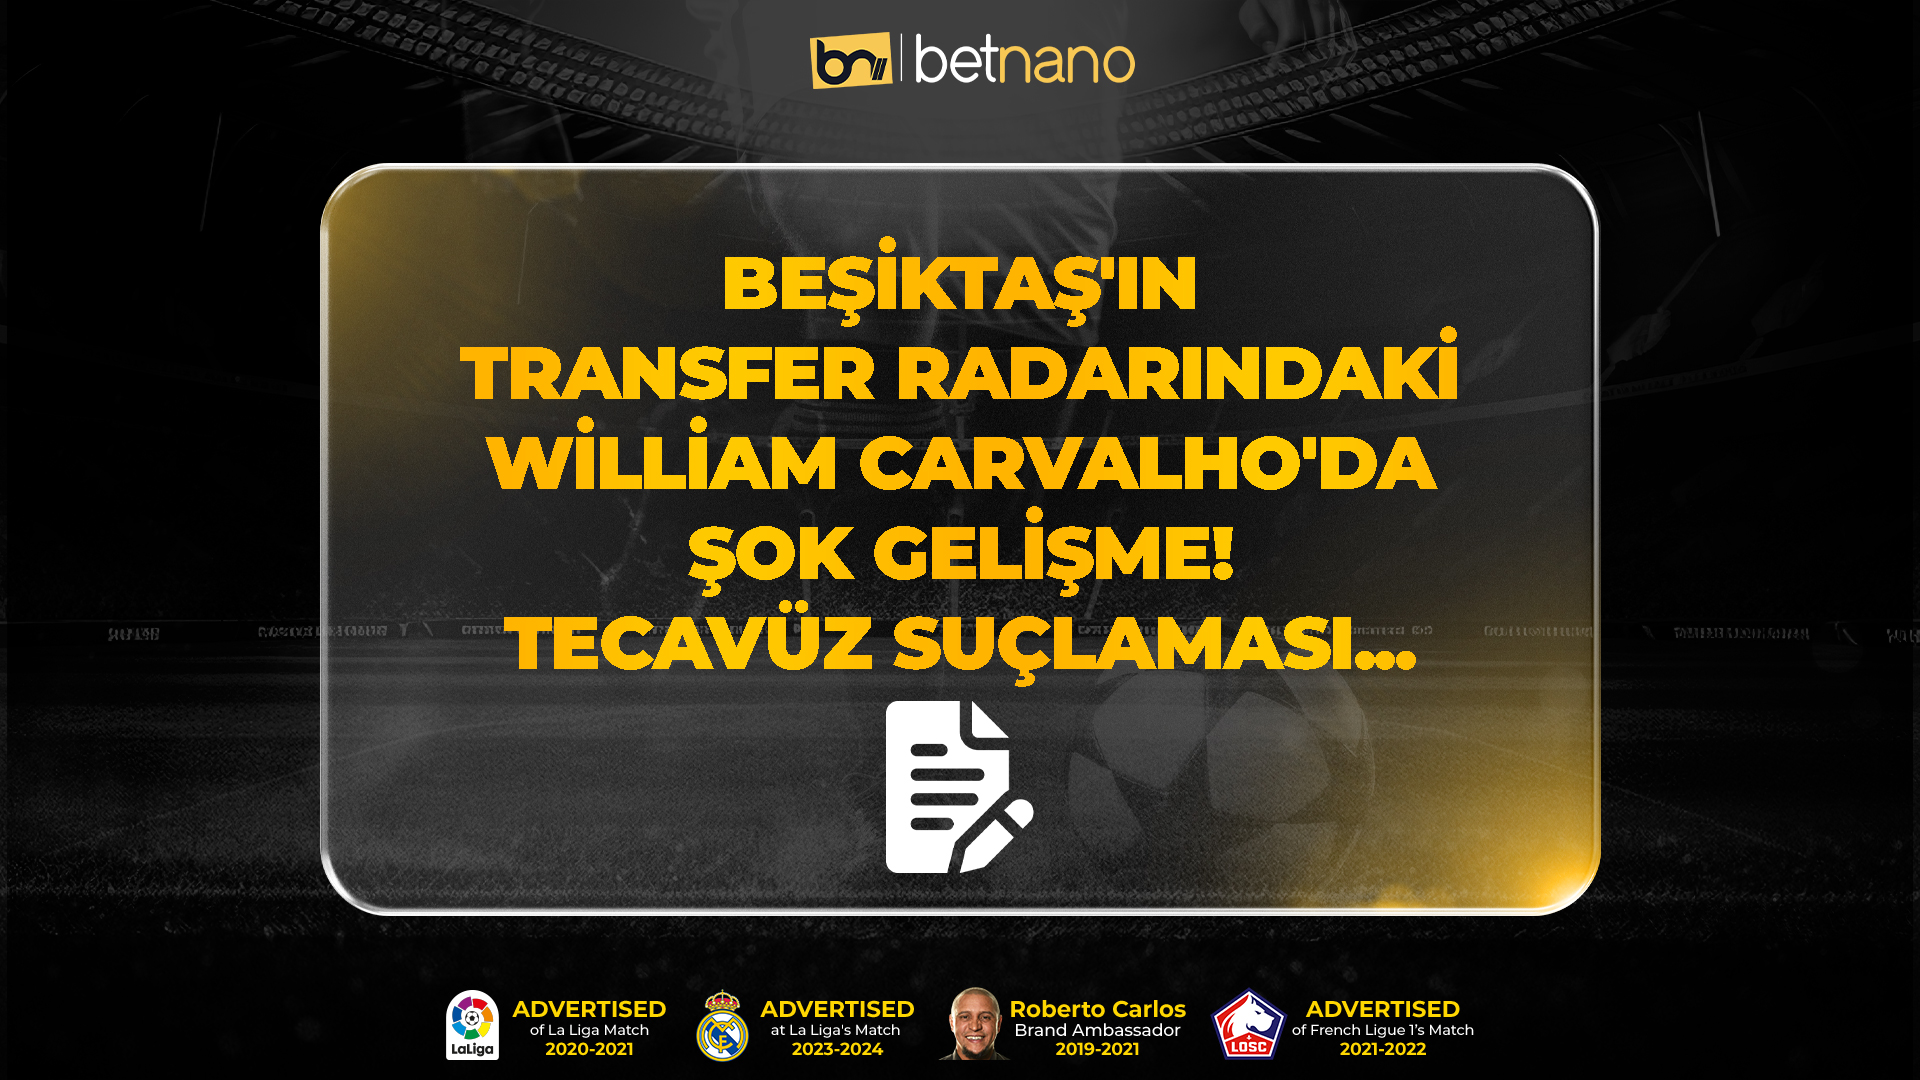 Beşiktaş'ın transfer radarındaki William Carvalho'da şok gelişme! Tecavüz suçlaması...